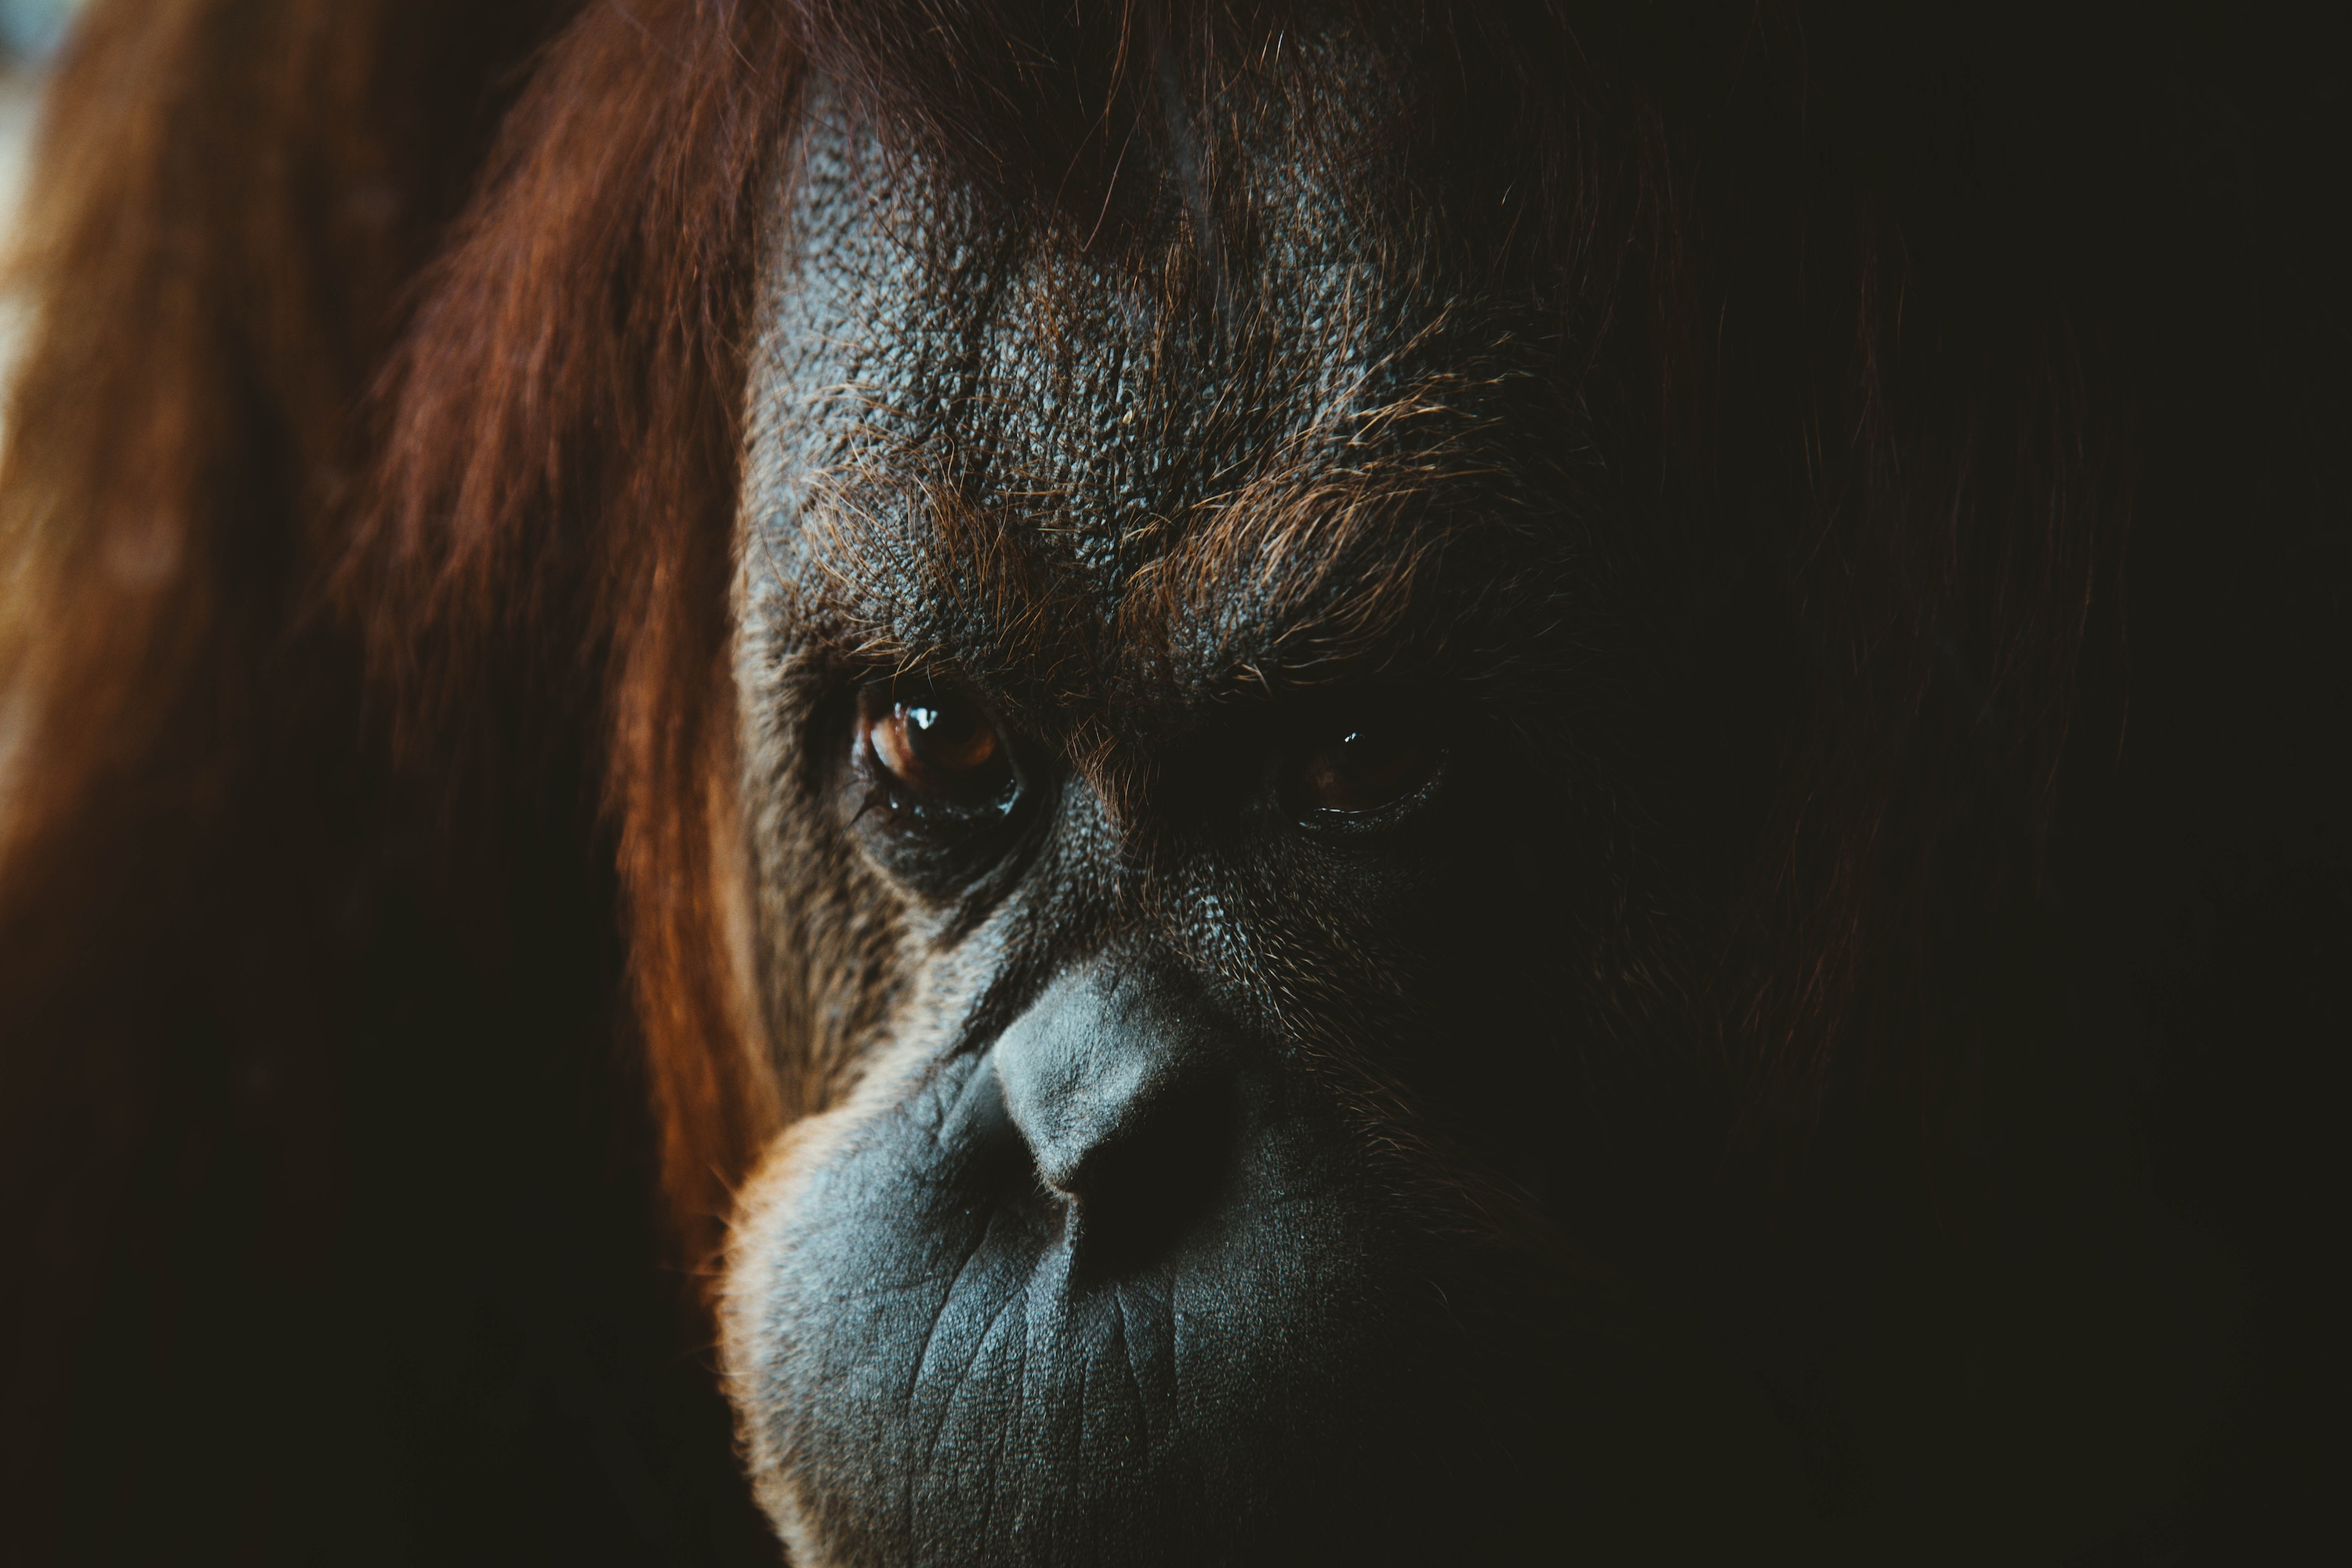 Orangutan is watching you